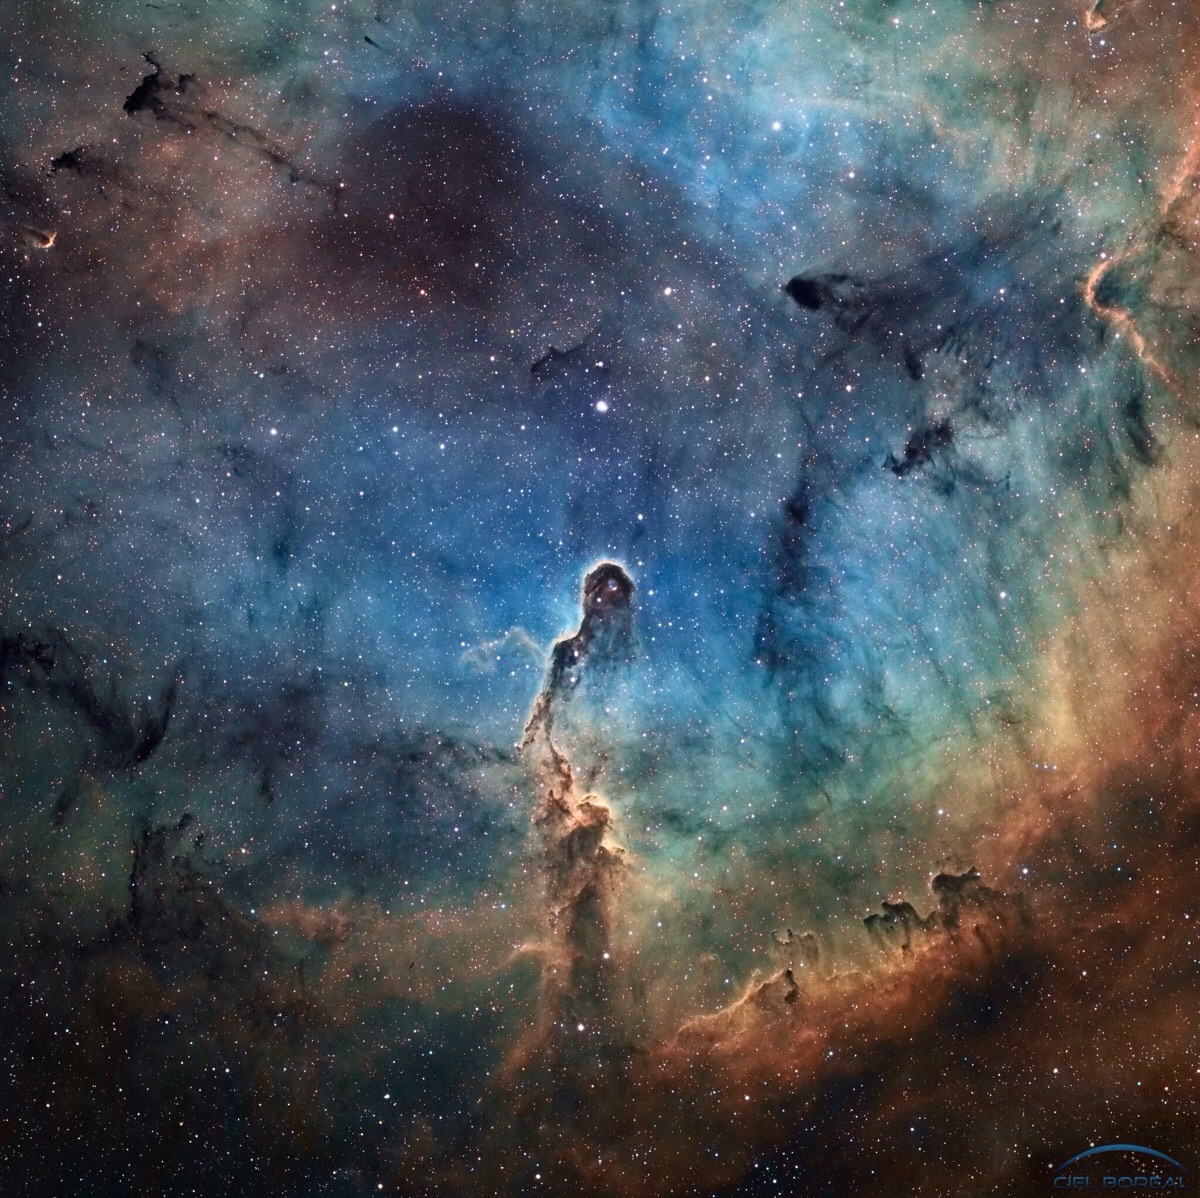 每日一天文图,ic 1396内的象鼻星云,位于仙王座内,距离我们约为3000万